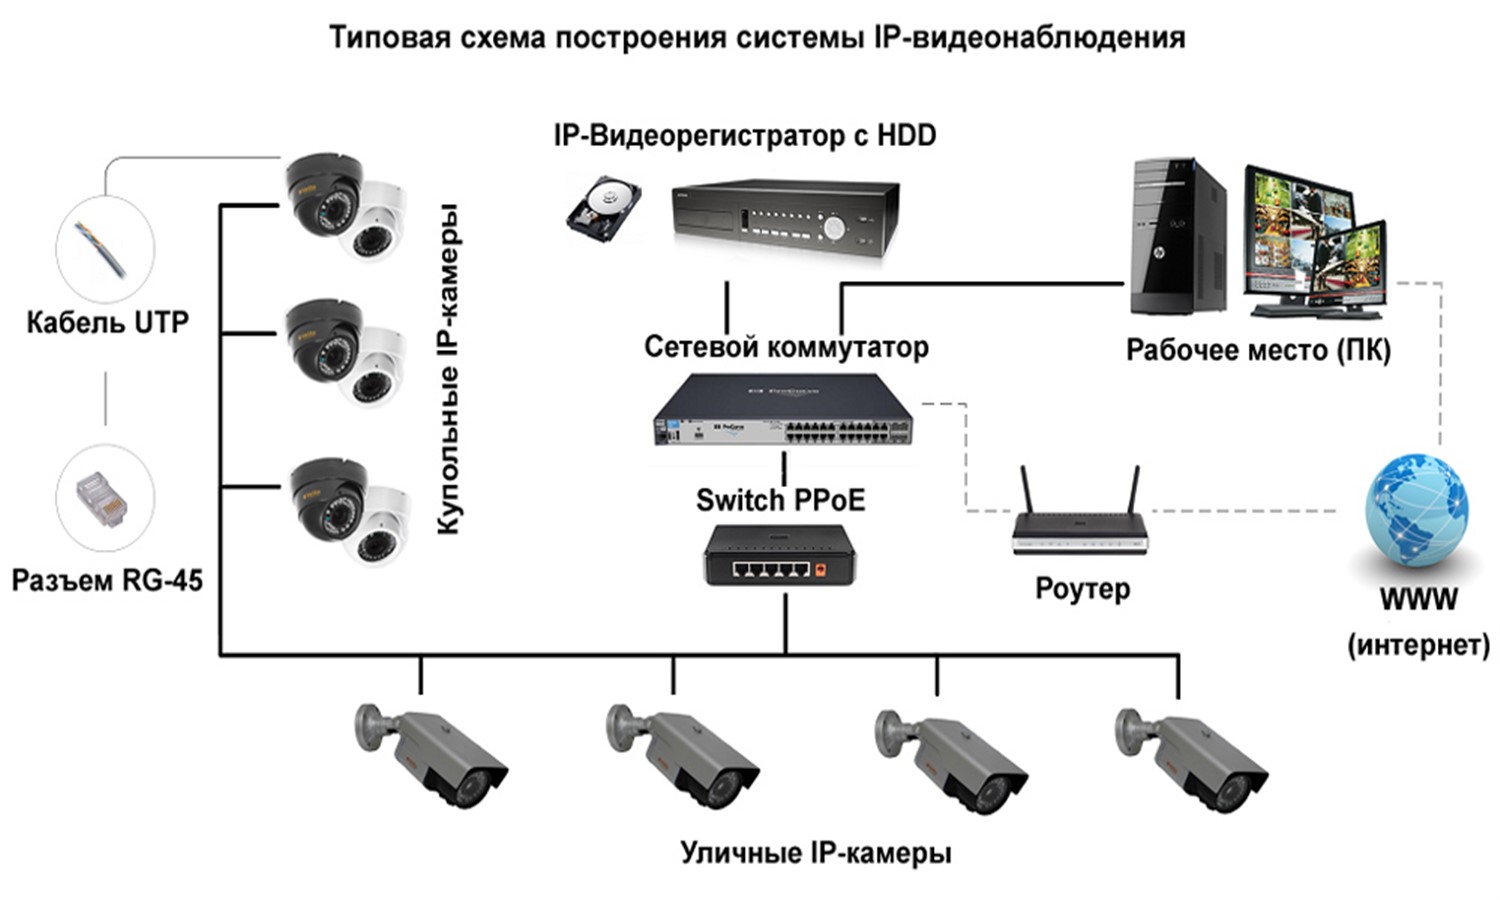 Ip-видеонаблюдение. особенности сетевых видеокамер